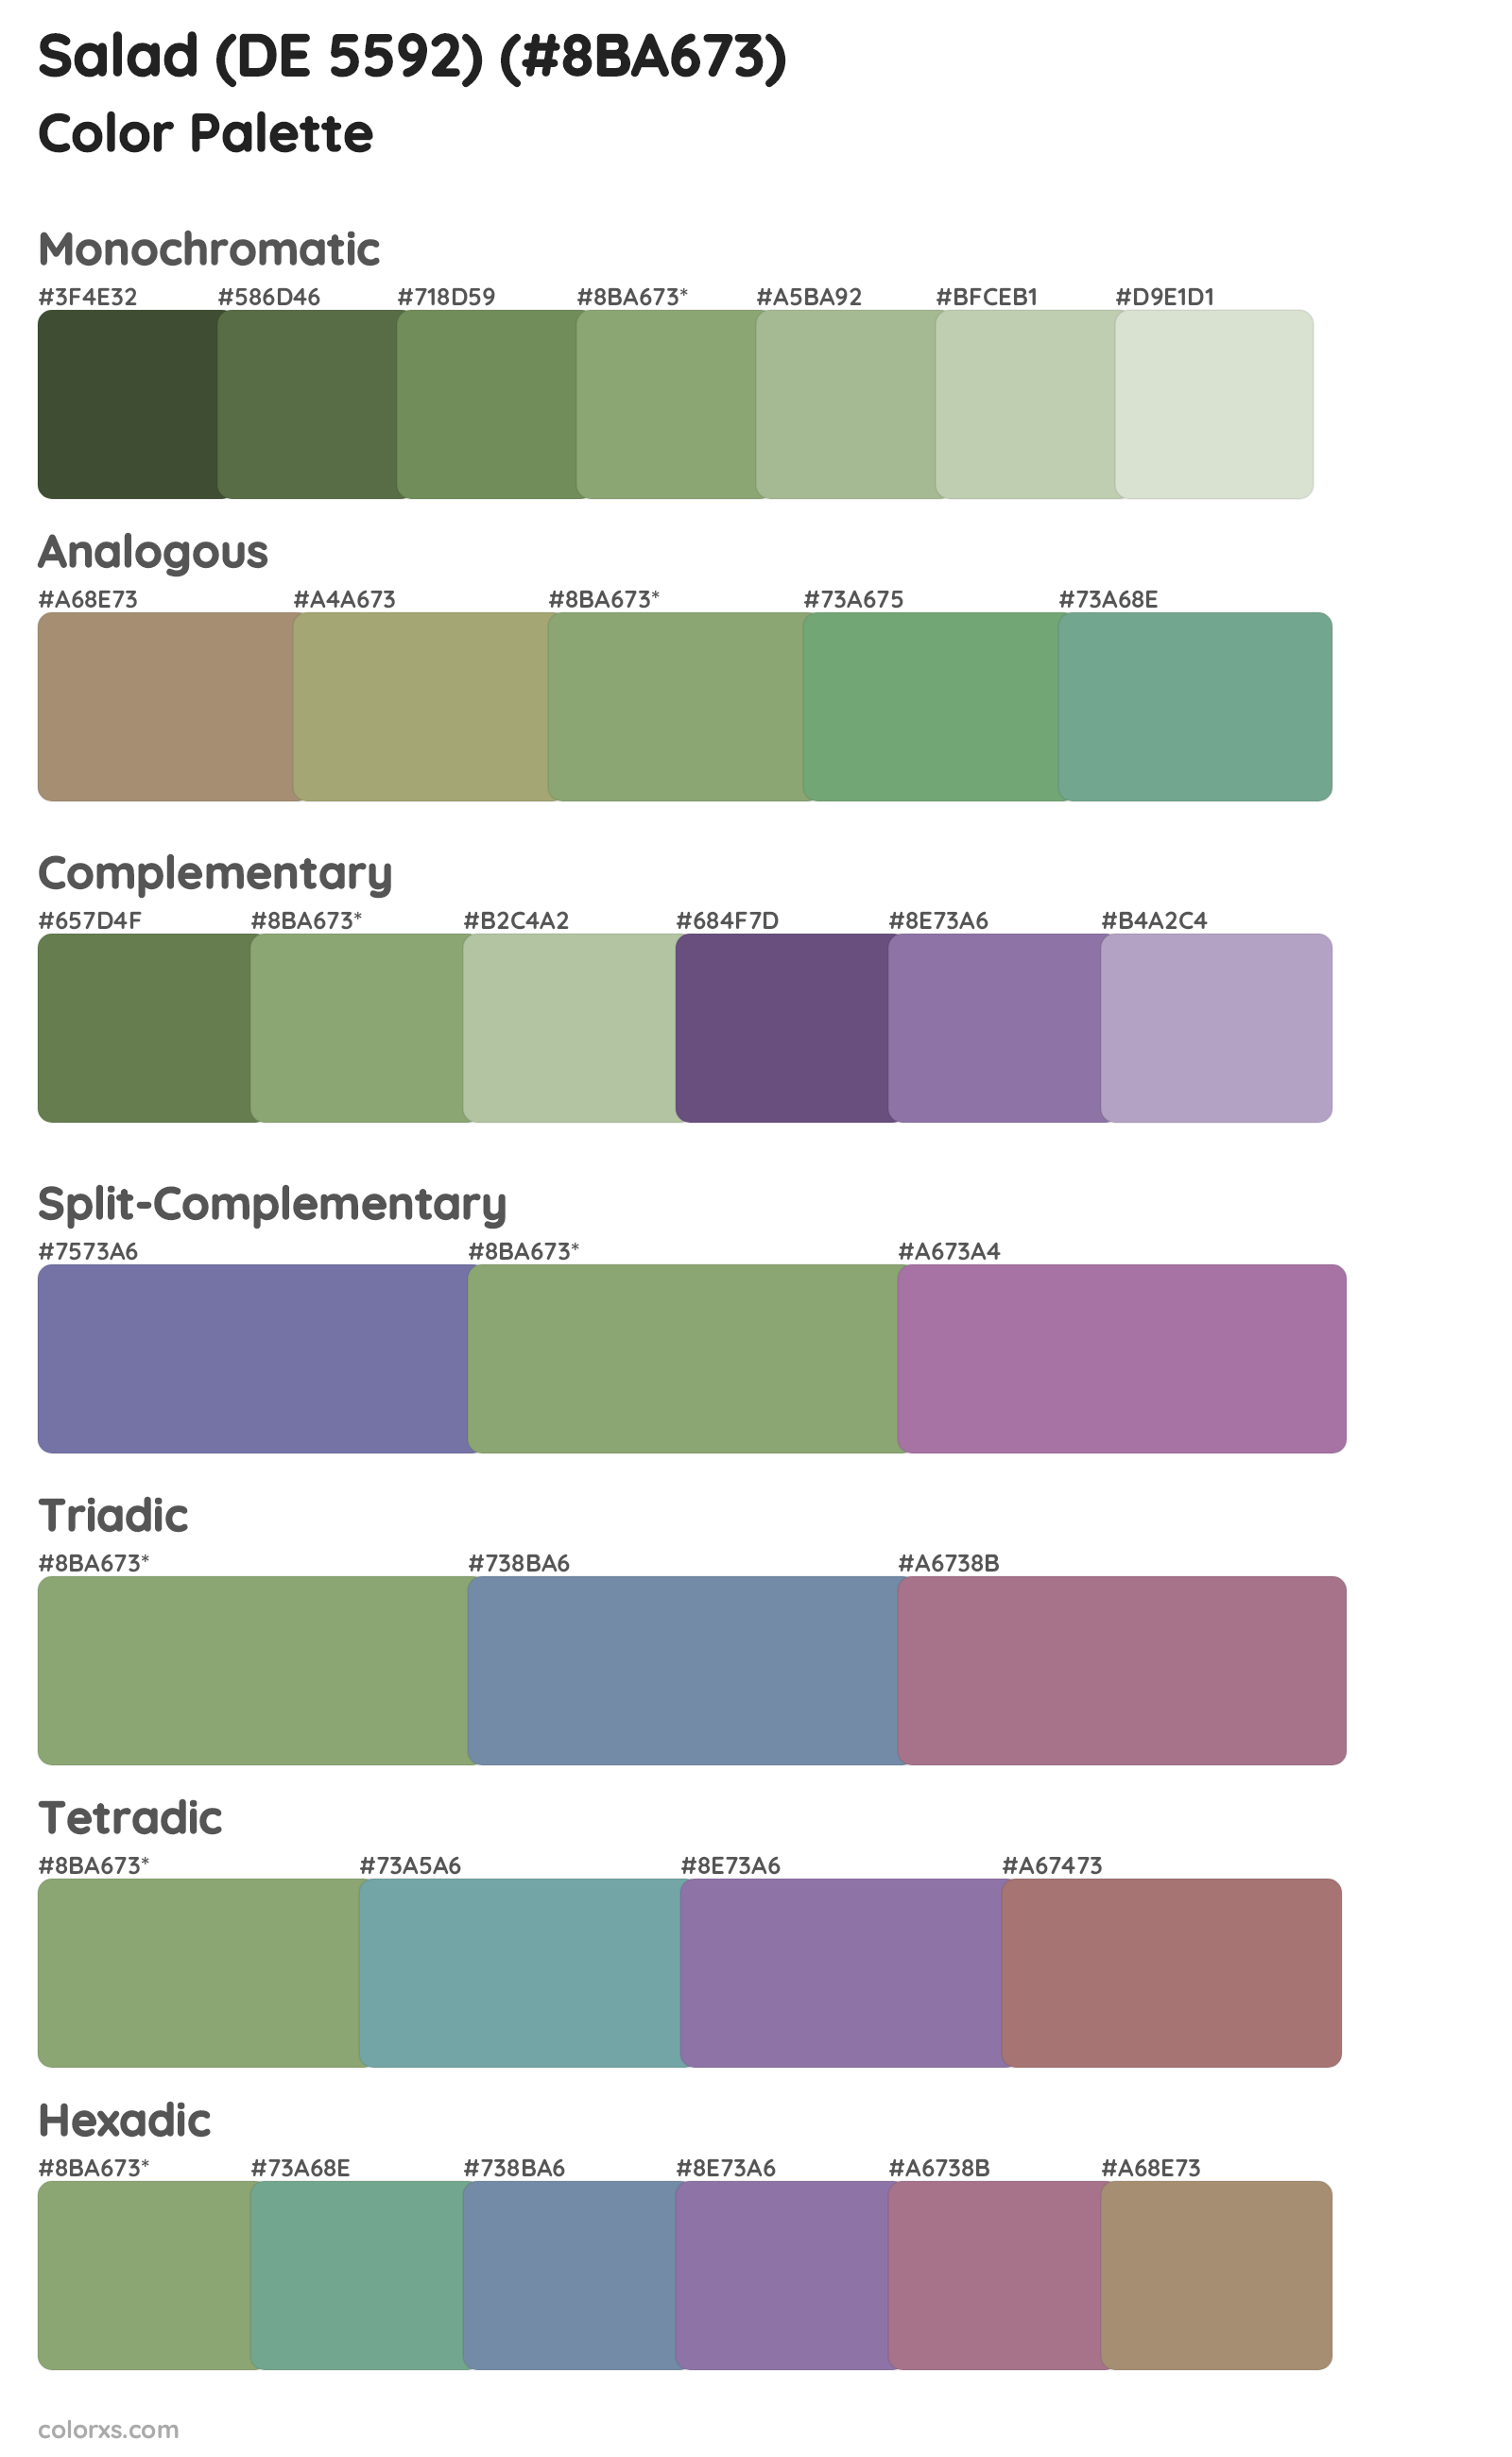 Salad (DE 5592) Color Scheme Palettes